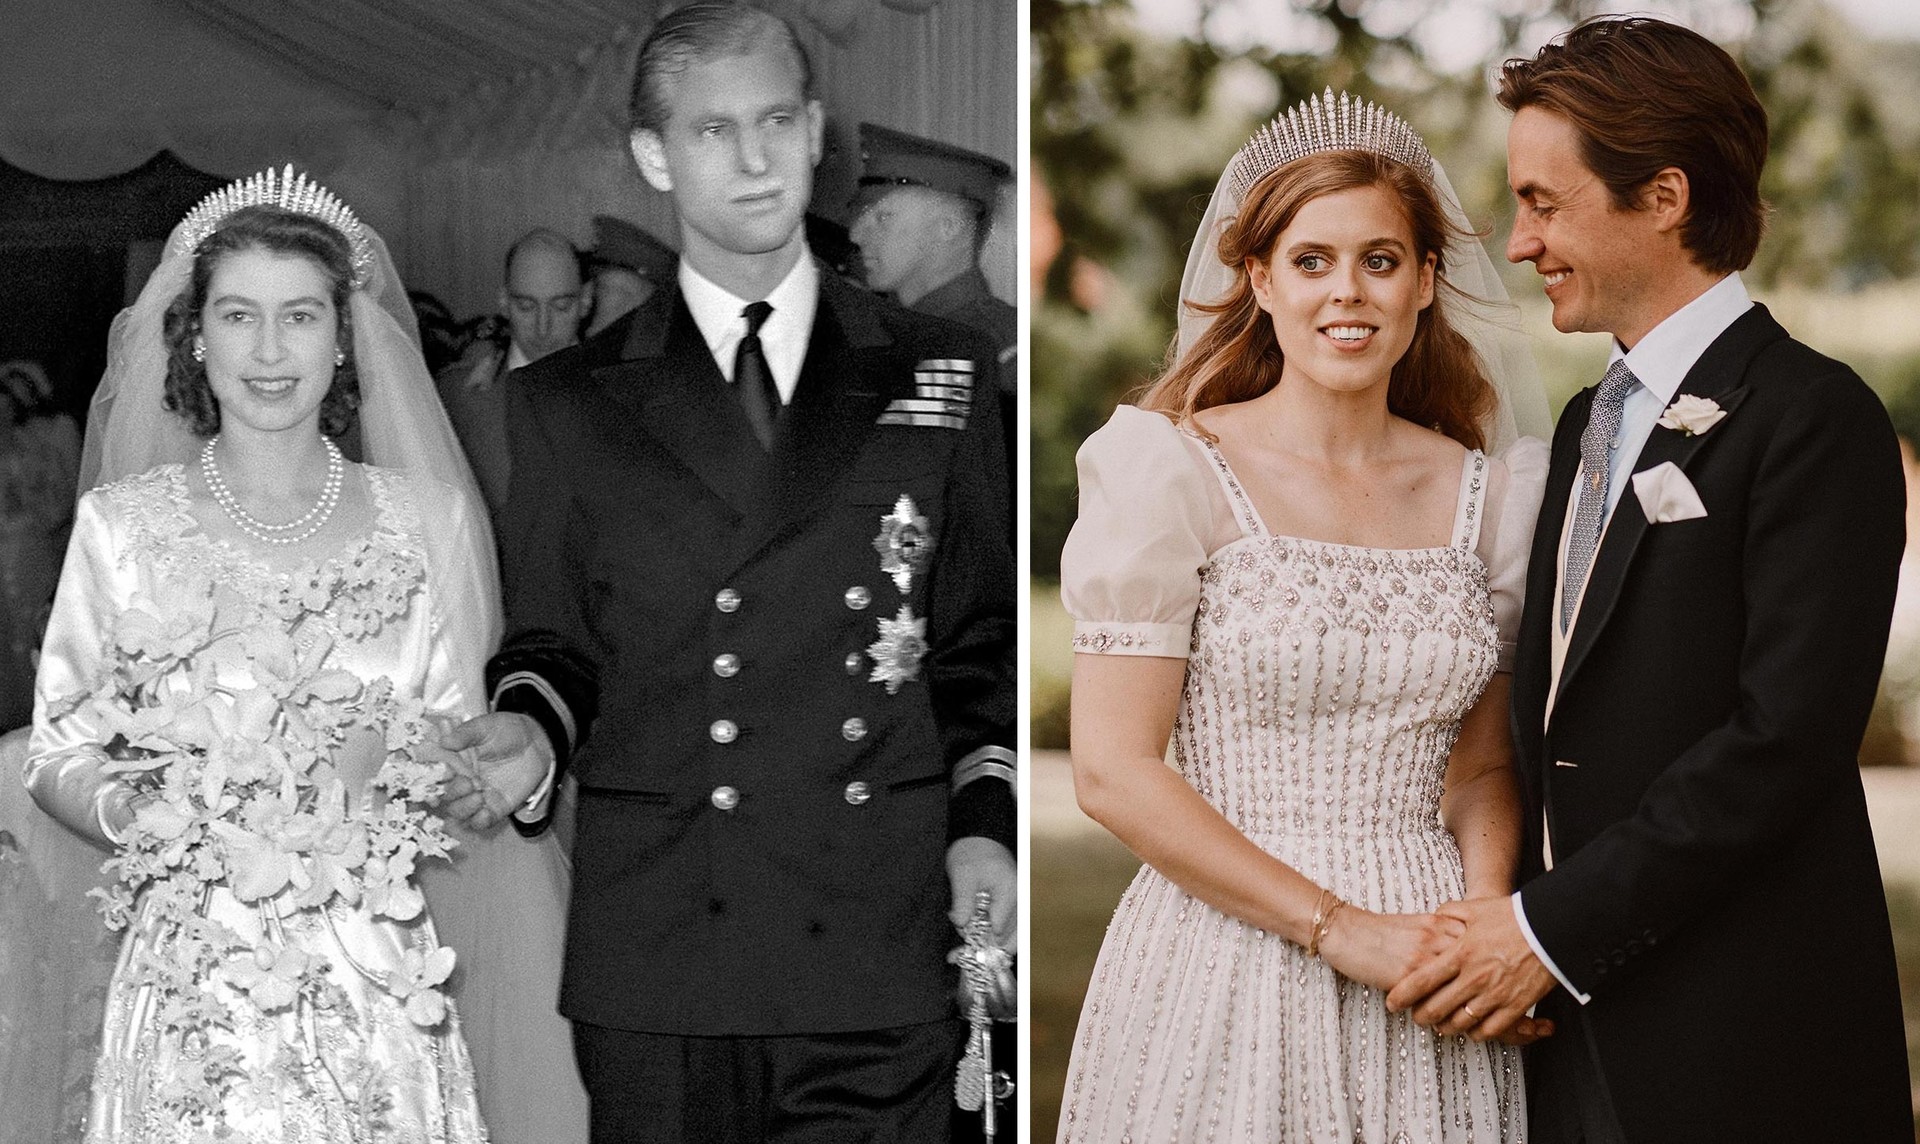 La boda de Isabel II en 1947 y la boda de la princesa Beatrice en 2020.